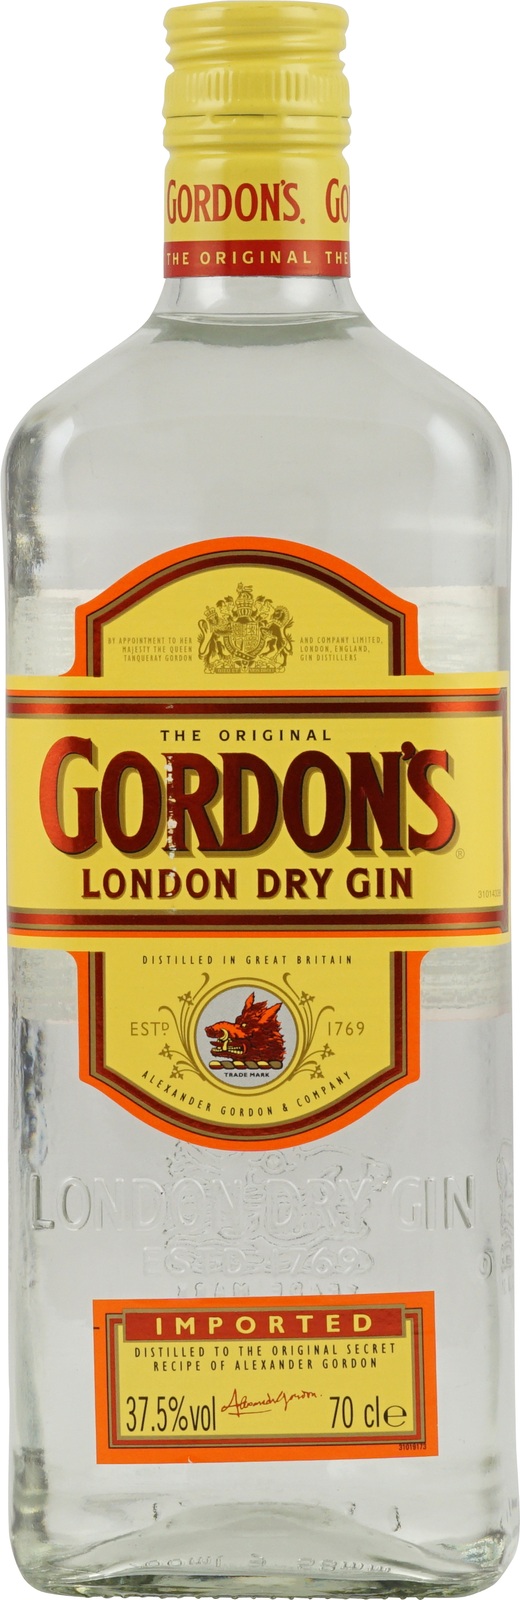 Gordons London Dry Gin bei barfish.de kaufen | Gin